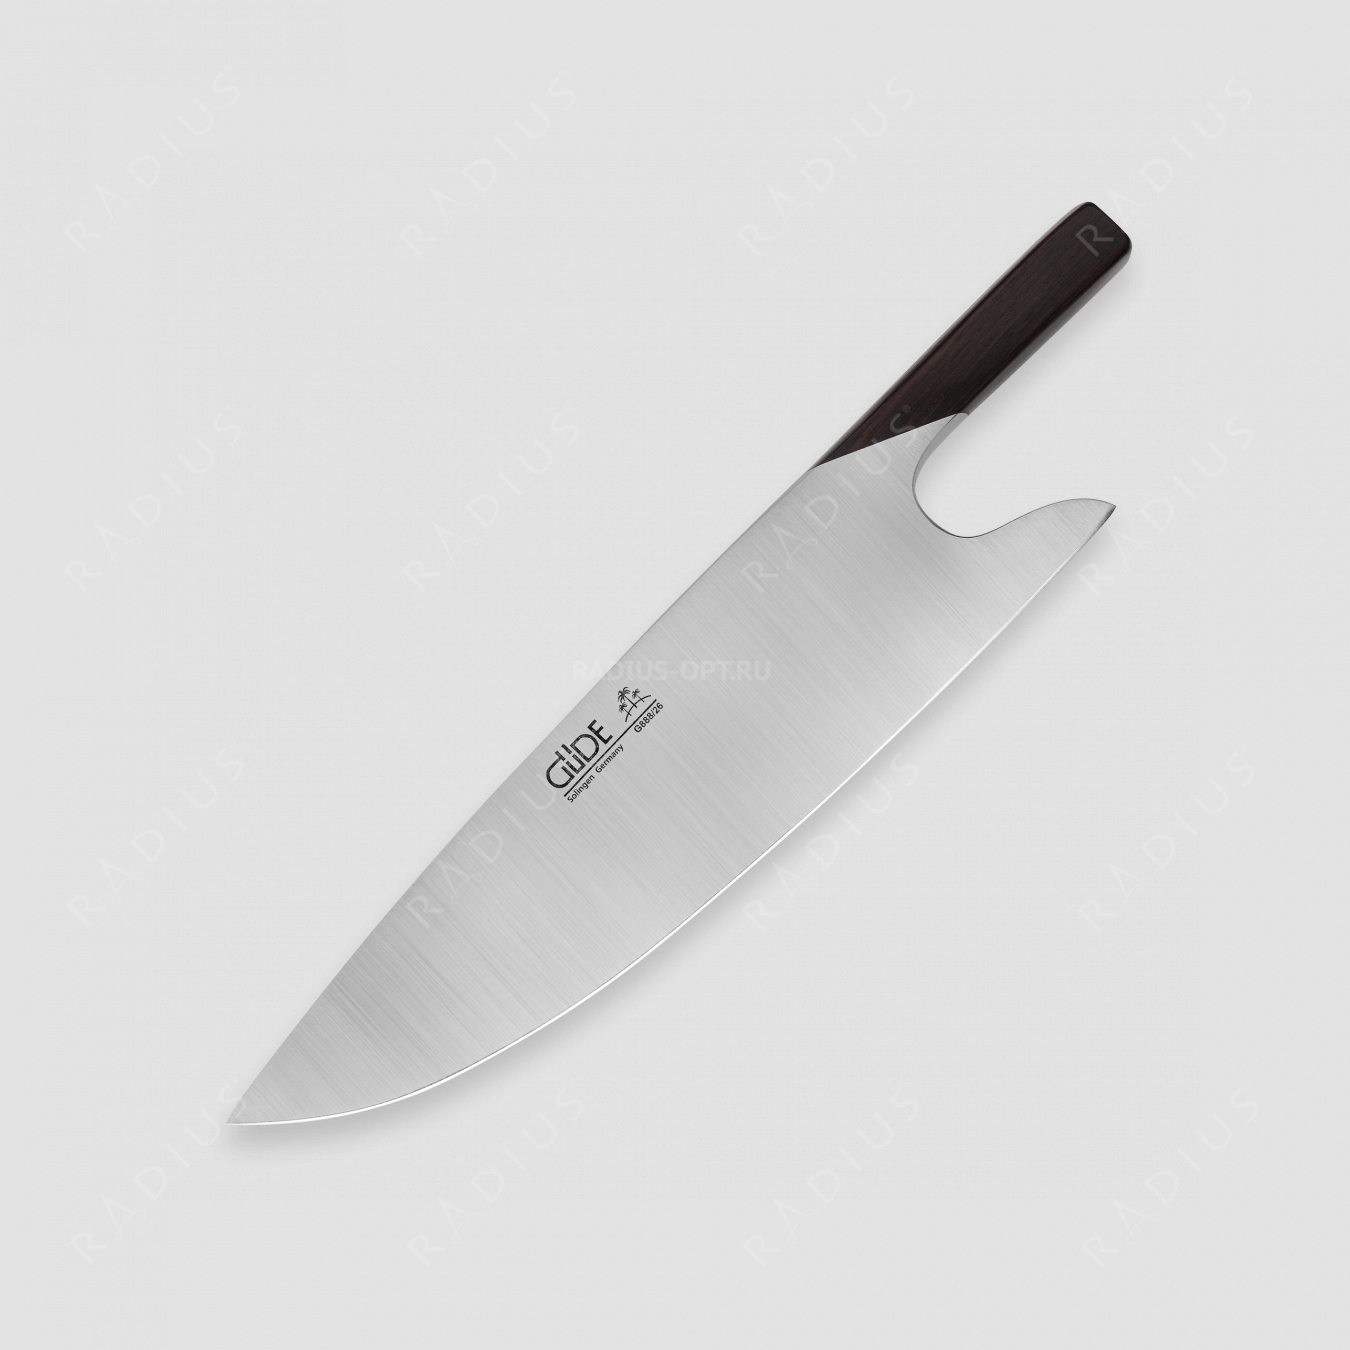 Профессиональный поварской кухонный нож «Шеф» 26 см, ручка из дерева, в подарочной коробке, серия The Knife, GUDE, Золинген, Германия